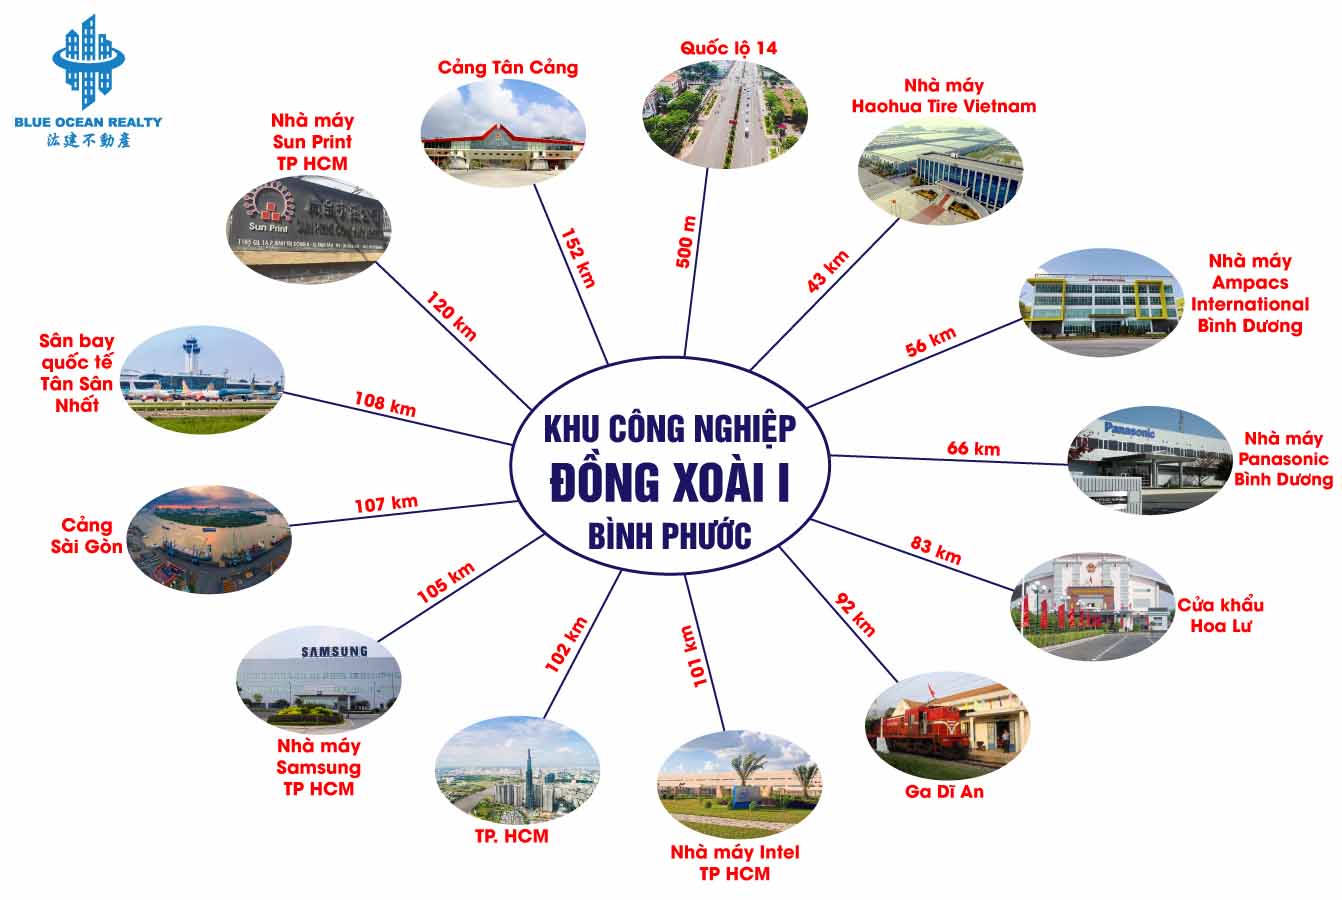 Khu công nghiệp Đồng Xoài I - TP Đồng Xoài tỉnh Bình Phước